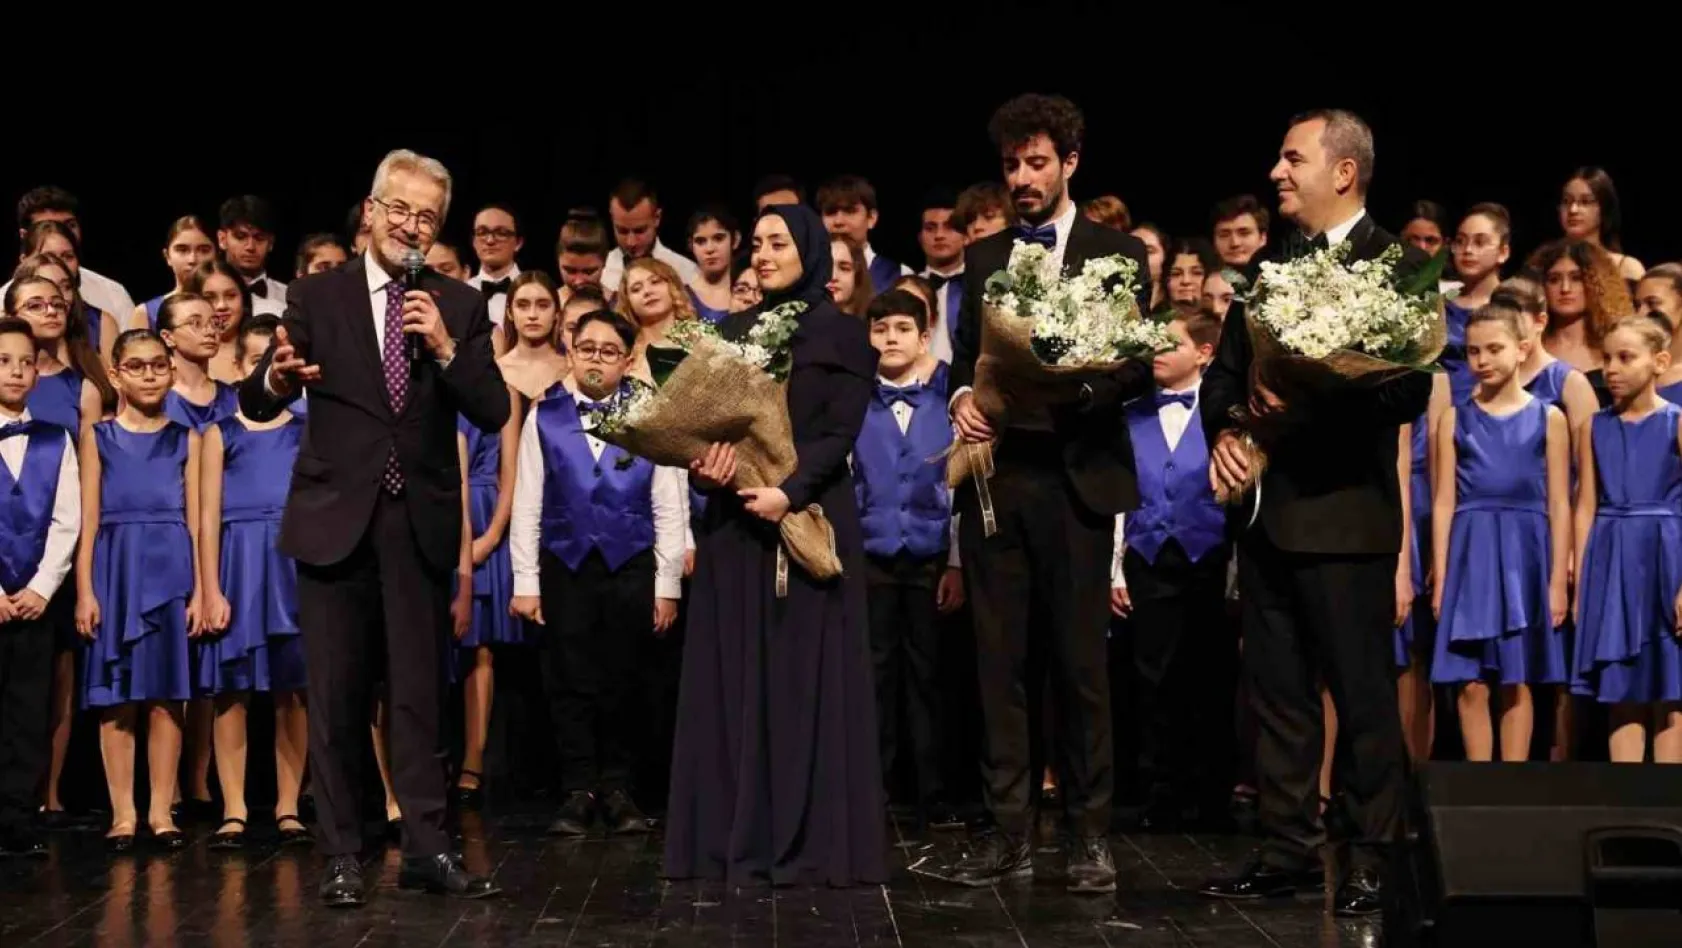 Nilüfer Çocuk ve Gençlik Korosu'ndan yeni yılın ilk konseri